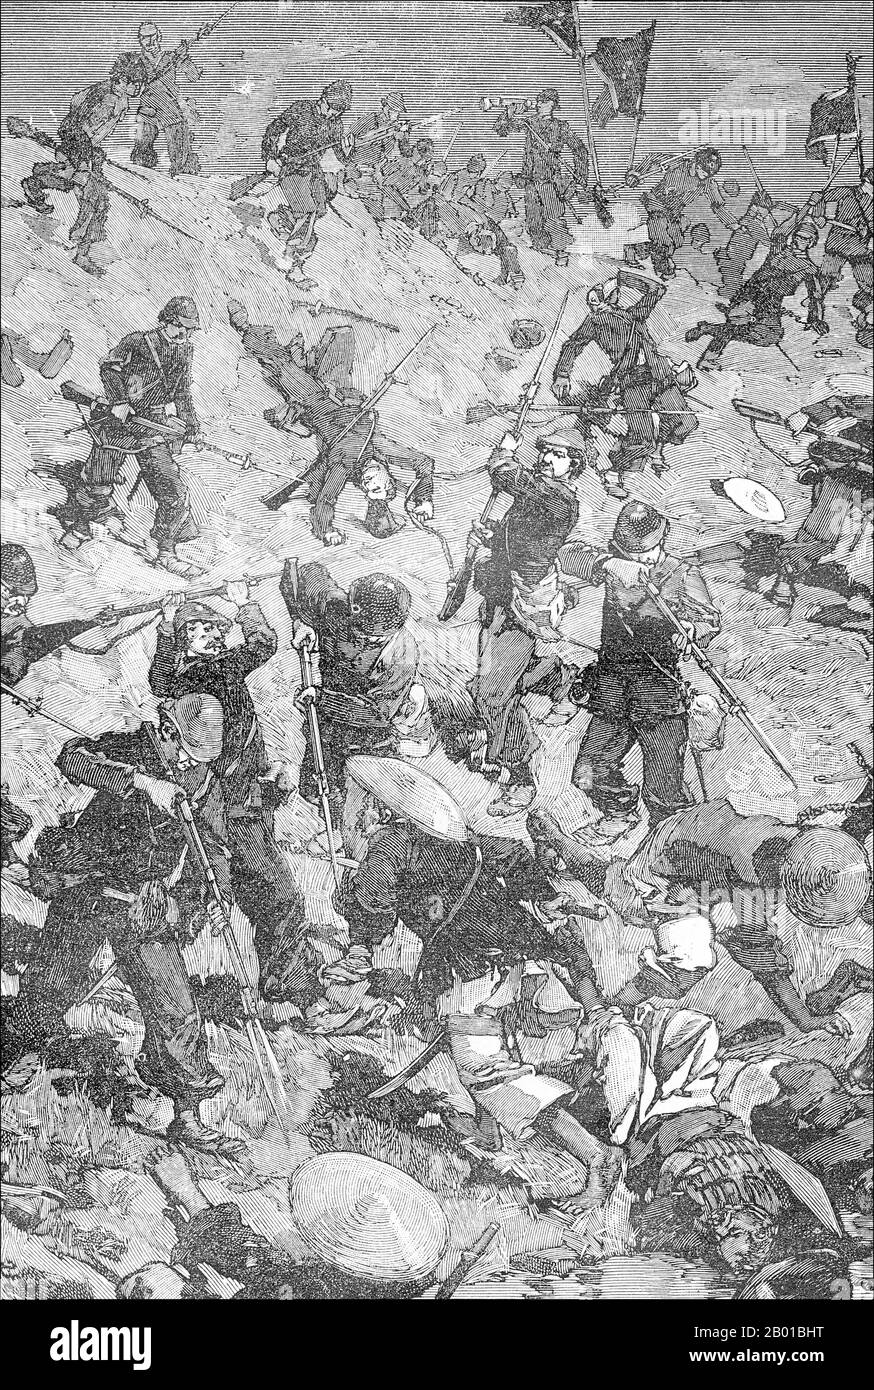 Vietnam/Frankreich: Französische Marineinfanteristen kämpfen bei der Schlacht von Palan gegen Schwarze Flaggen, 1. September 1883. Stich von Charles-Lucien Huard (12. Februar 1837 - 22. Januar 1899), 1887. Die Tonkin-Kampagne (französisch: Campagne du Tonkin) war ein bewaffneter Konflikt, der zwischen Juni 1883 und April 1886 von den Franzosen gegen die Vietnamesen, Liu Yongfus Armee mit schwarzer Flagge und die chinesischen Armeen Guangxi und Yunnan geführt wurde, um Tonkin (Nordvietnam) zu besetzen und dort ein französisches Protektorat zu verankern. Stockfoto